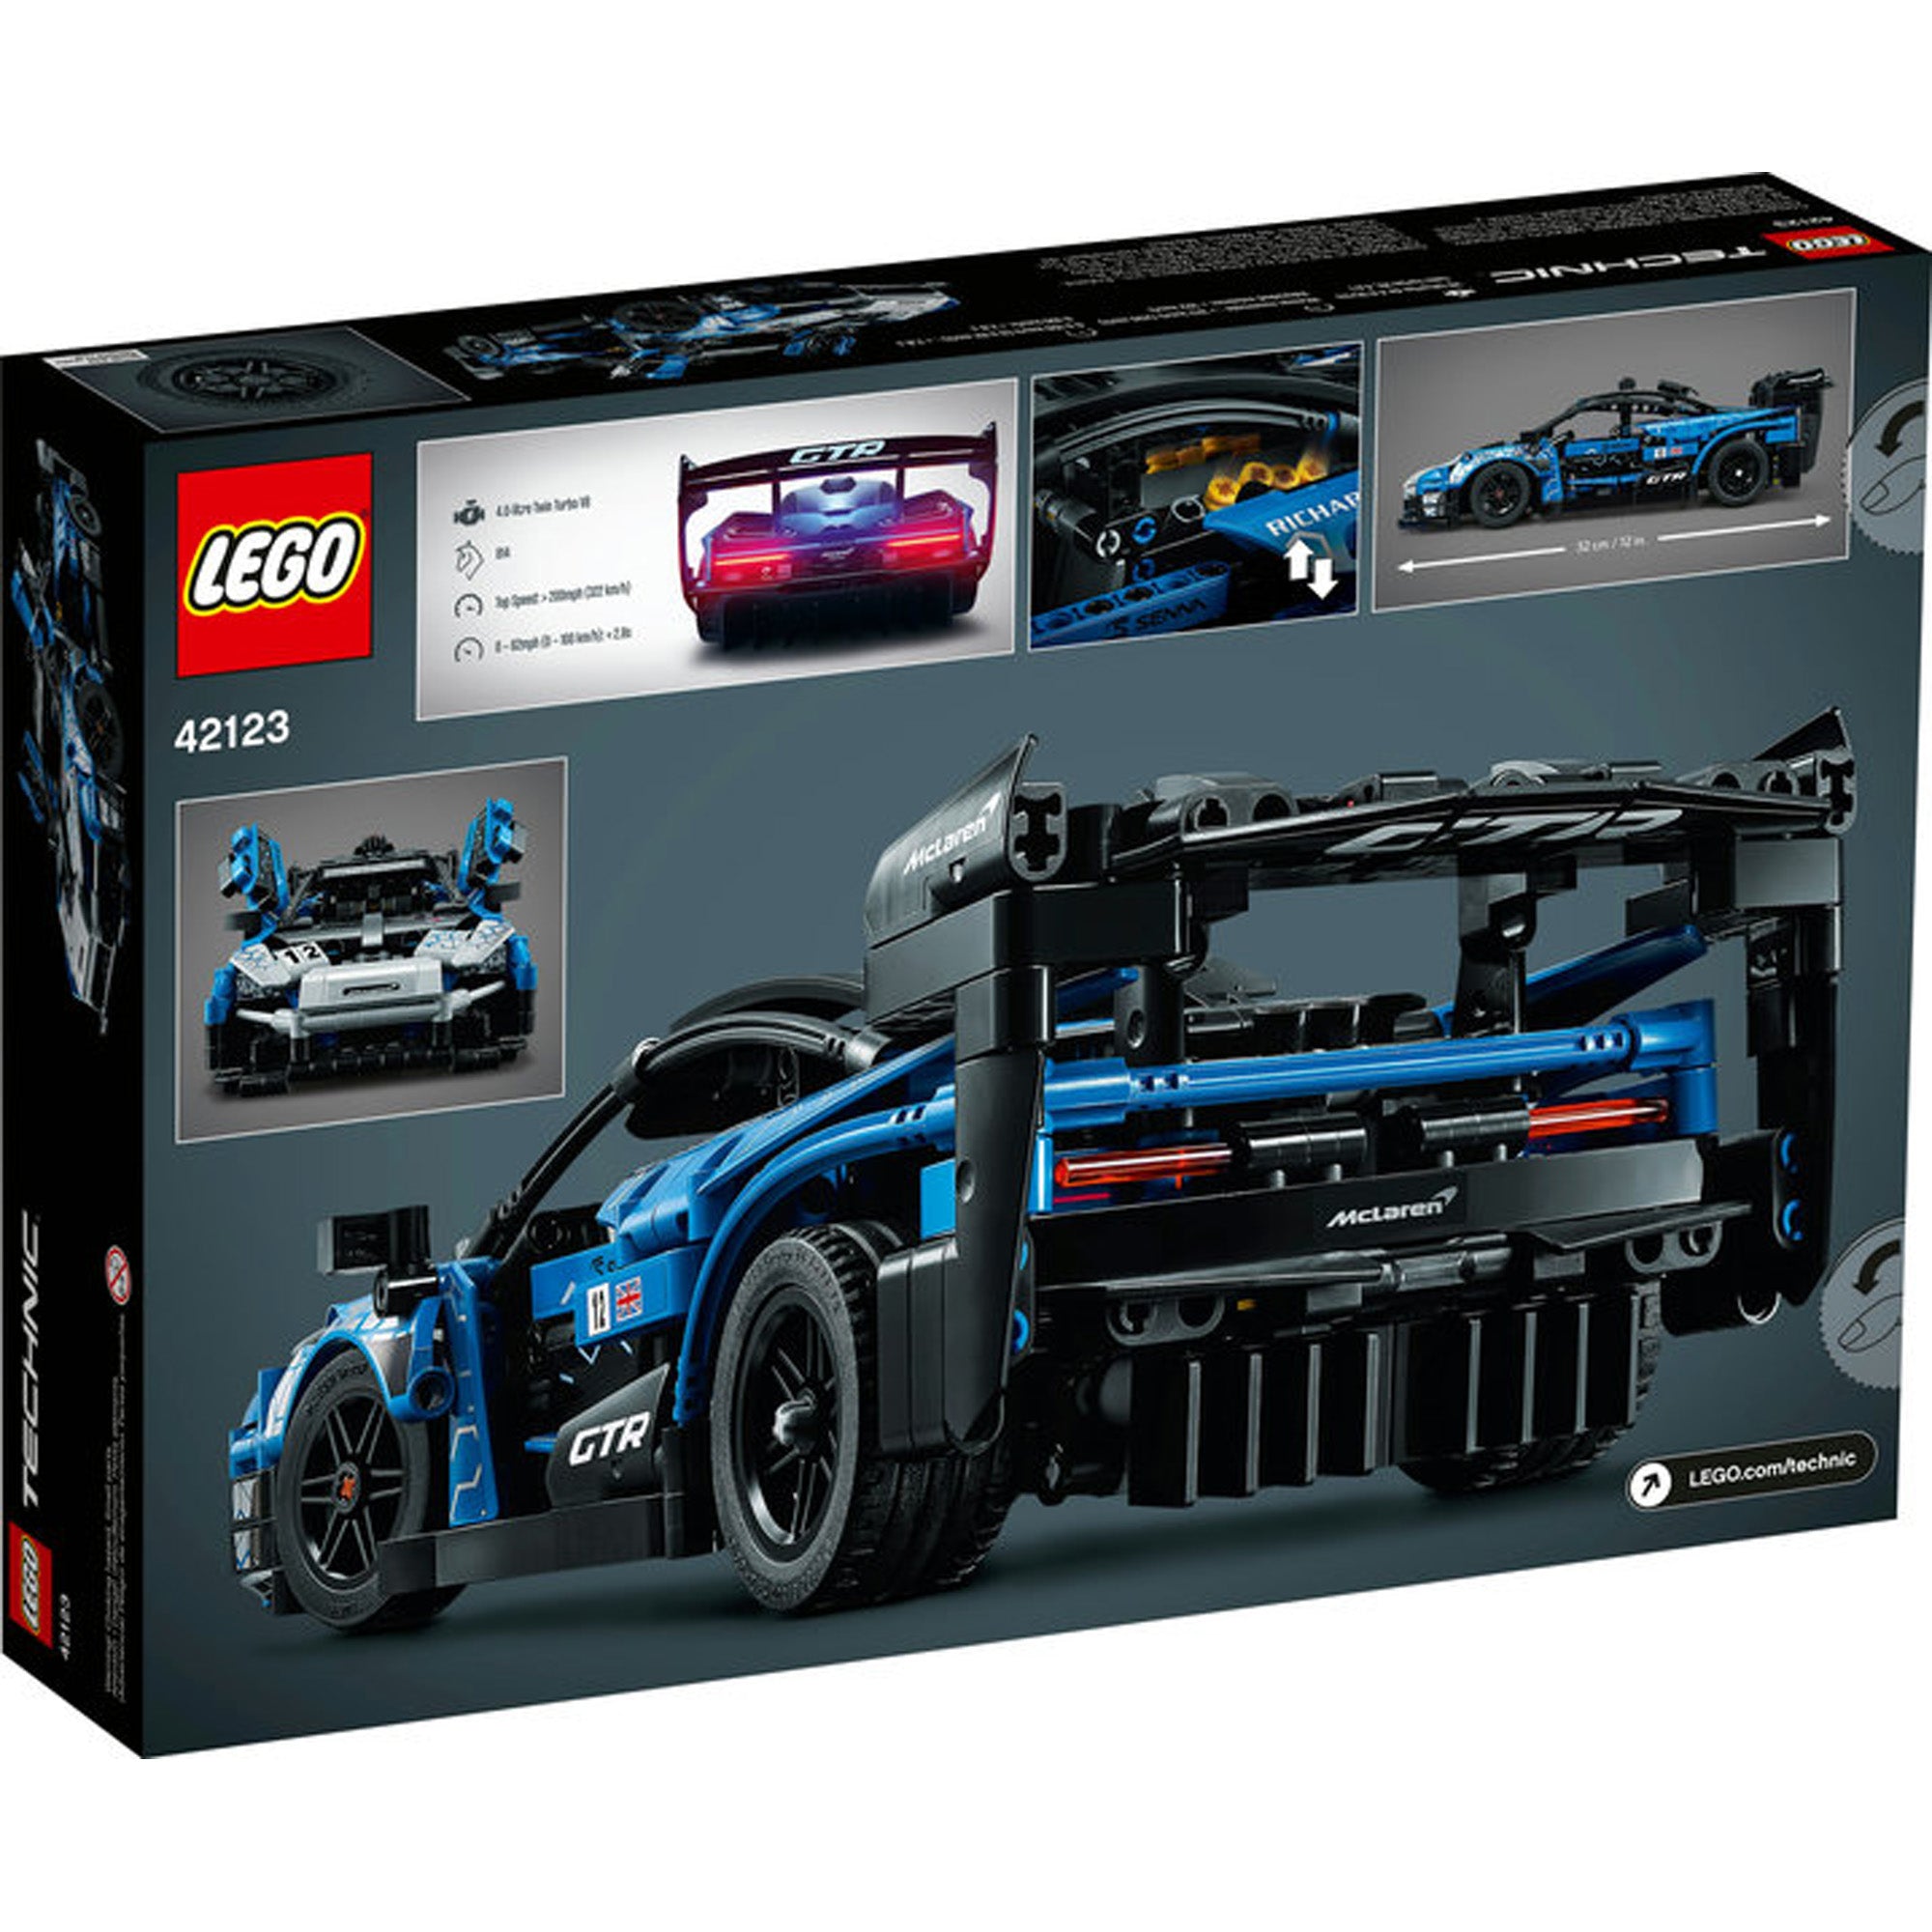 Lego Technic Nissan GTR NEW - Planète Jouets France - Boutique Jouets